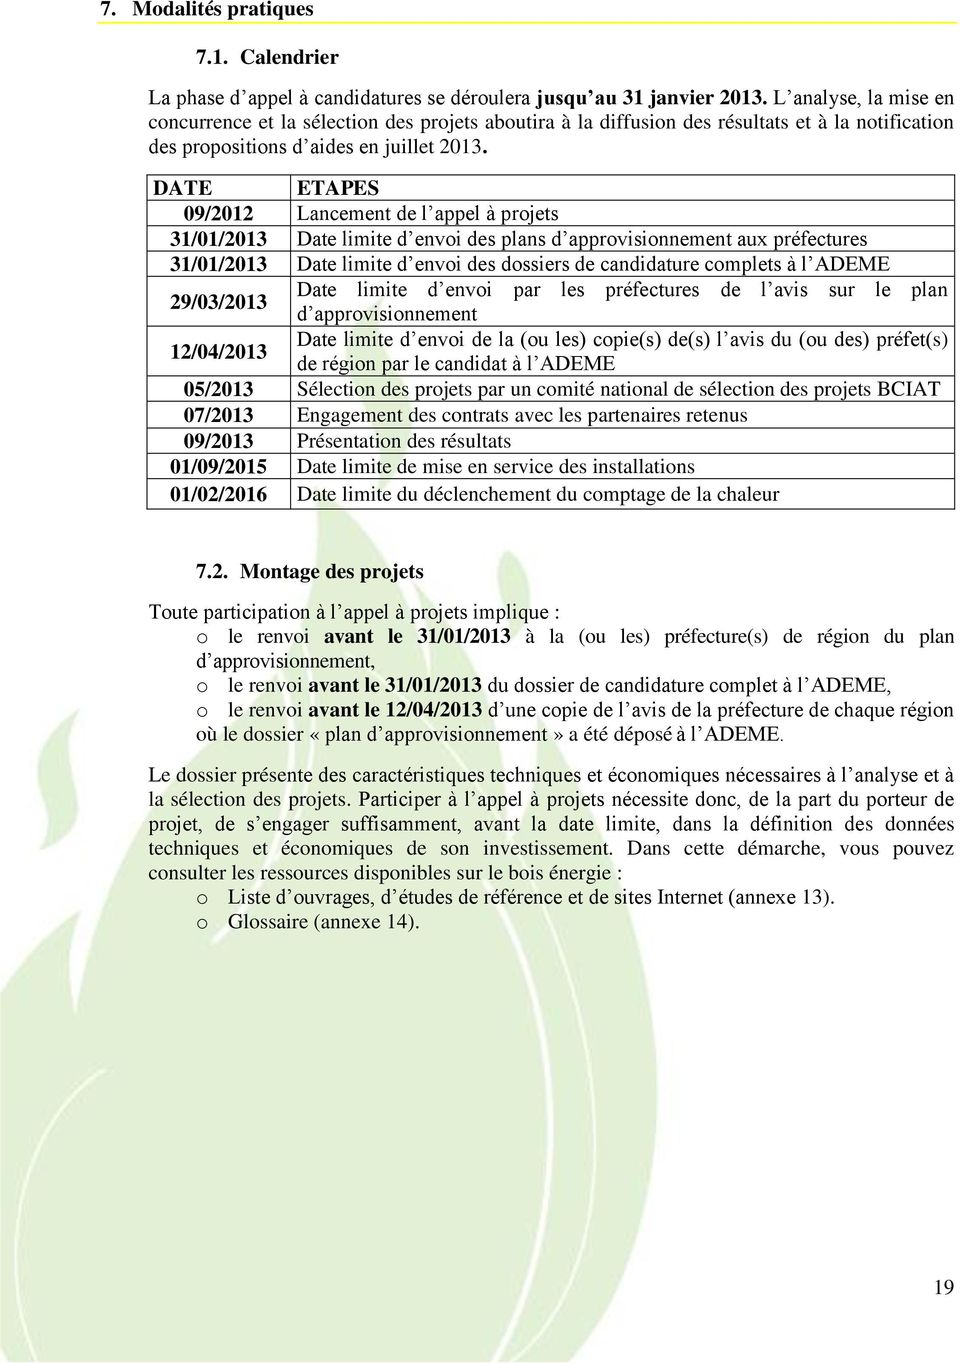 DATE ETAPES 09/2012 Lancement de l appel à projets 31/01/2013 Date limite d envoi des plans d approvisionnement aux préfectures 31/01/2013 Date limite d envoi des dossiers de candidature complets à l